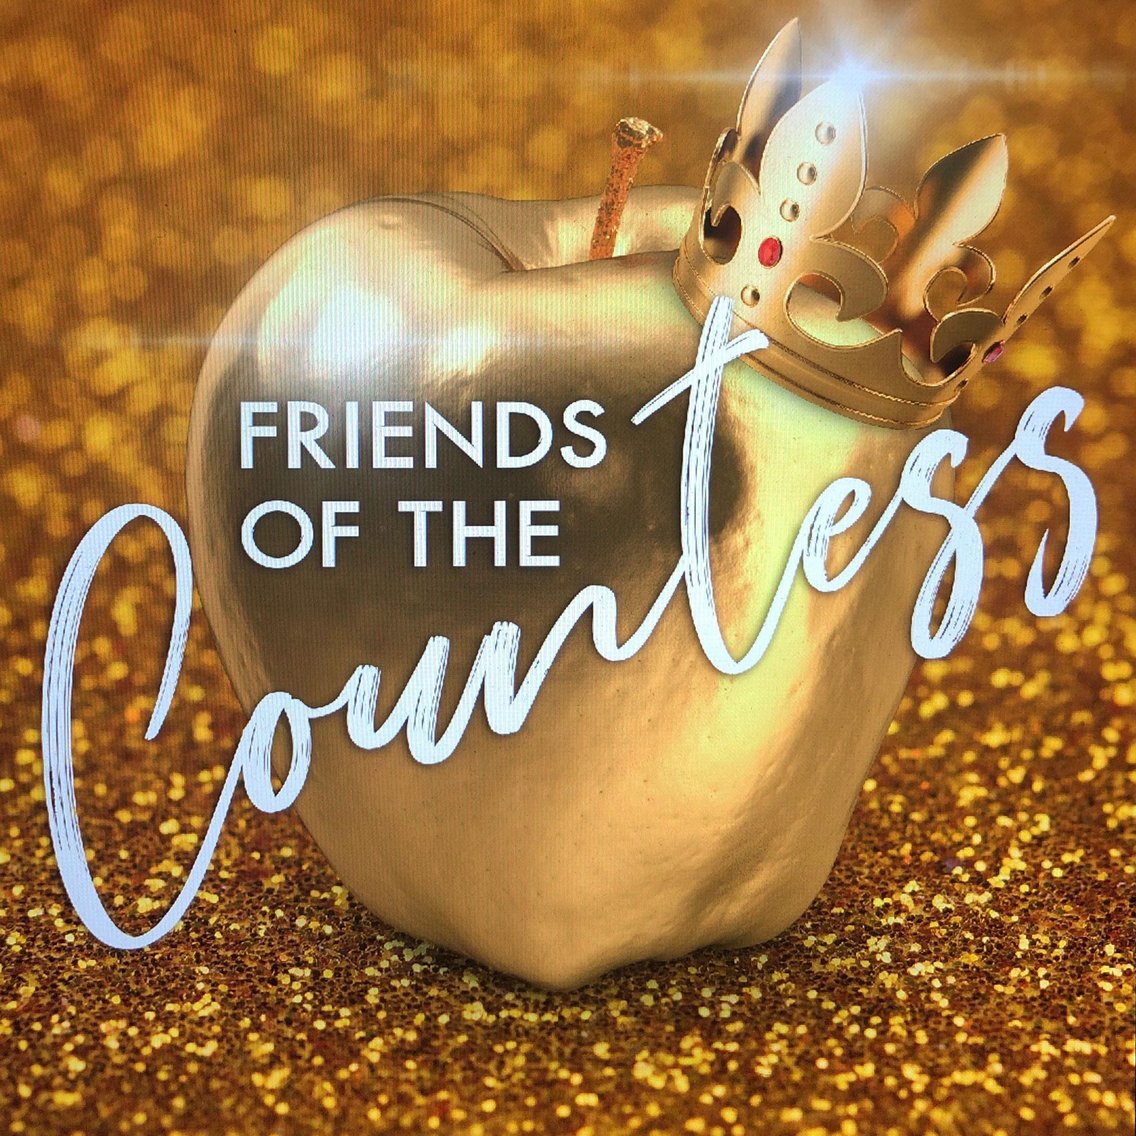 Friends of the Countess - imagen de portada
